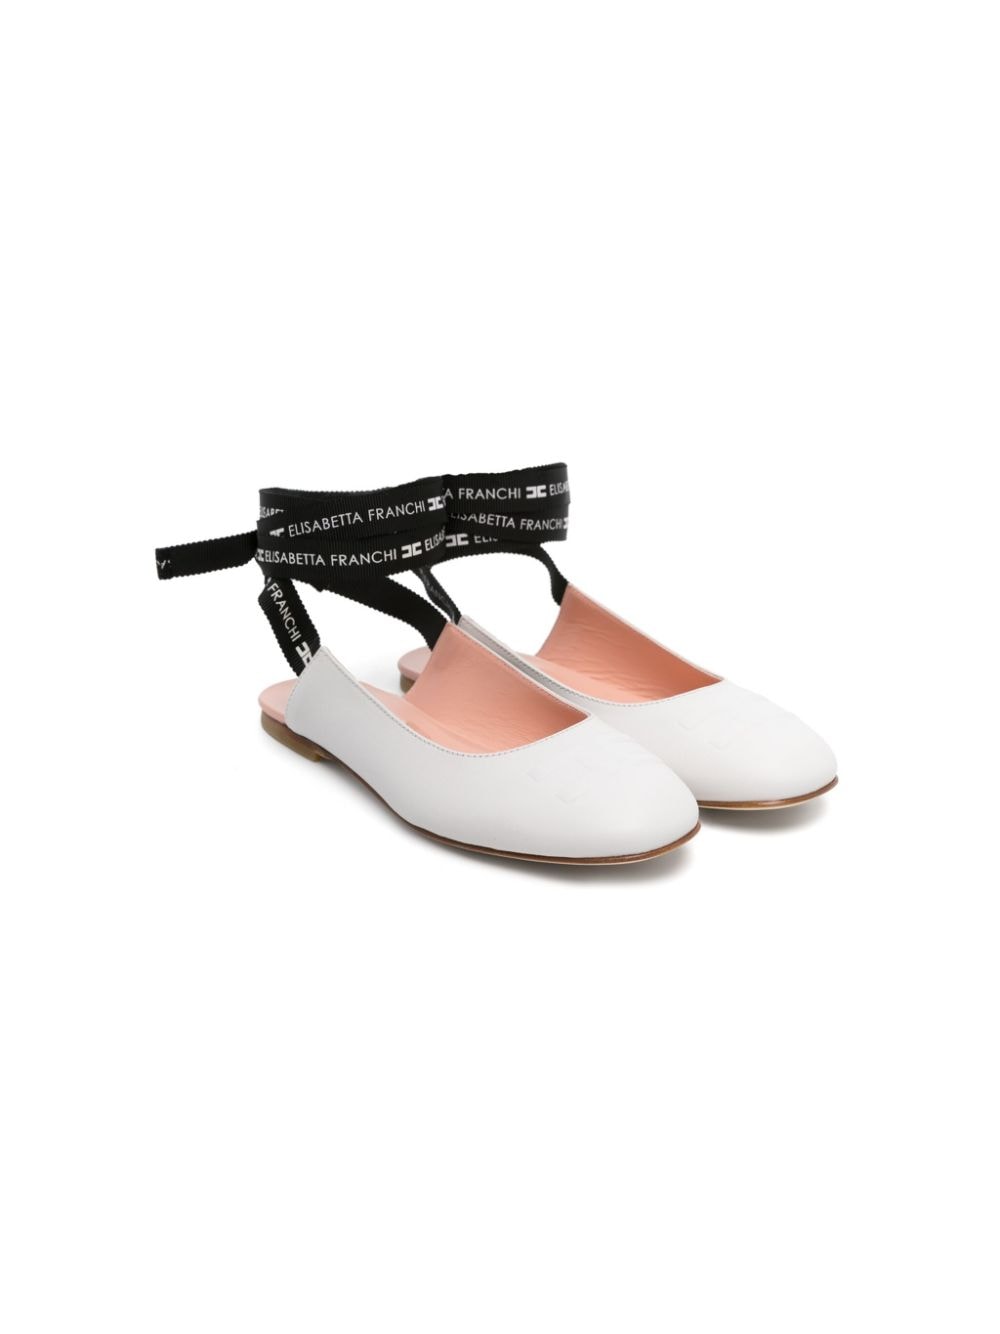 Elisabetta Franchi La Mia Bambina lace-up leather ballerina shoes - White von Elisabetta Franchi La Mia Bambina